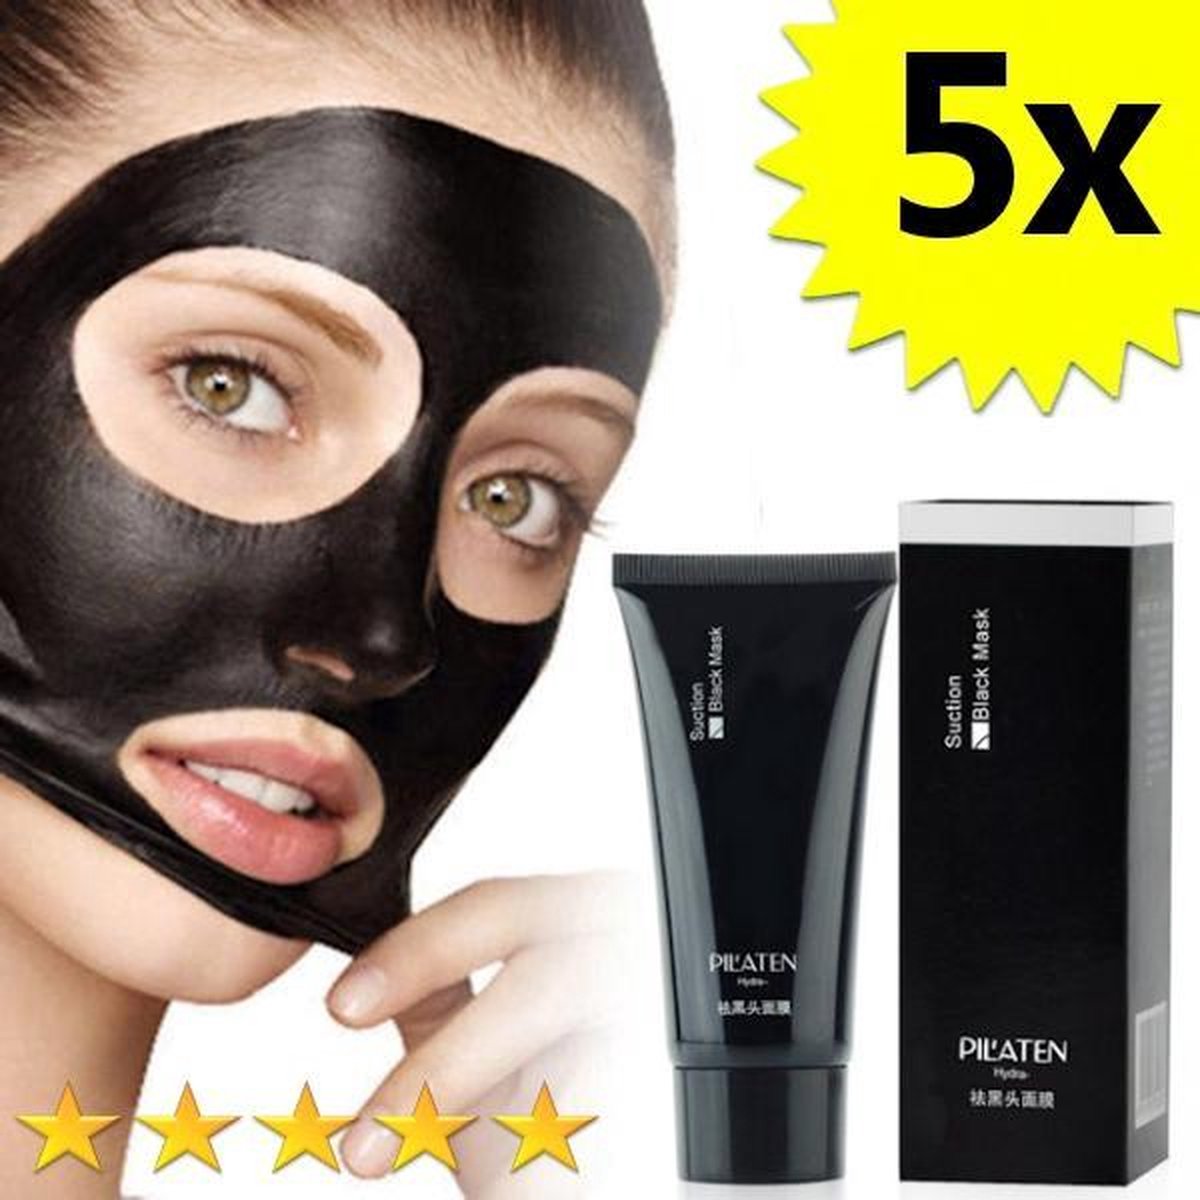 5 x Blackhead Masker Deluxe | Pilaten | Mee eters verwijderen dankzij het Zwarte masker